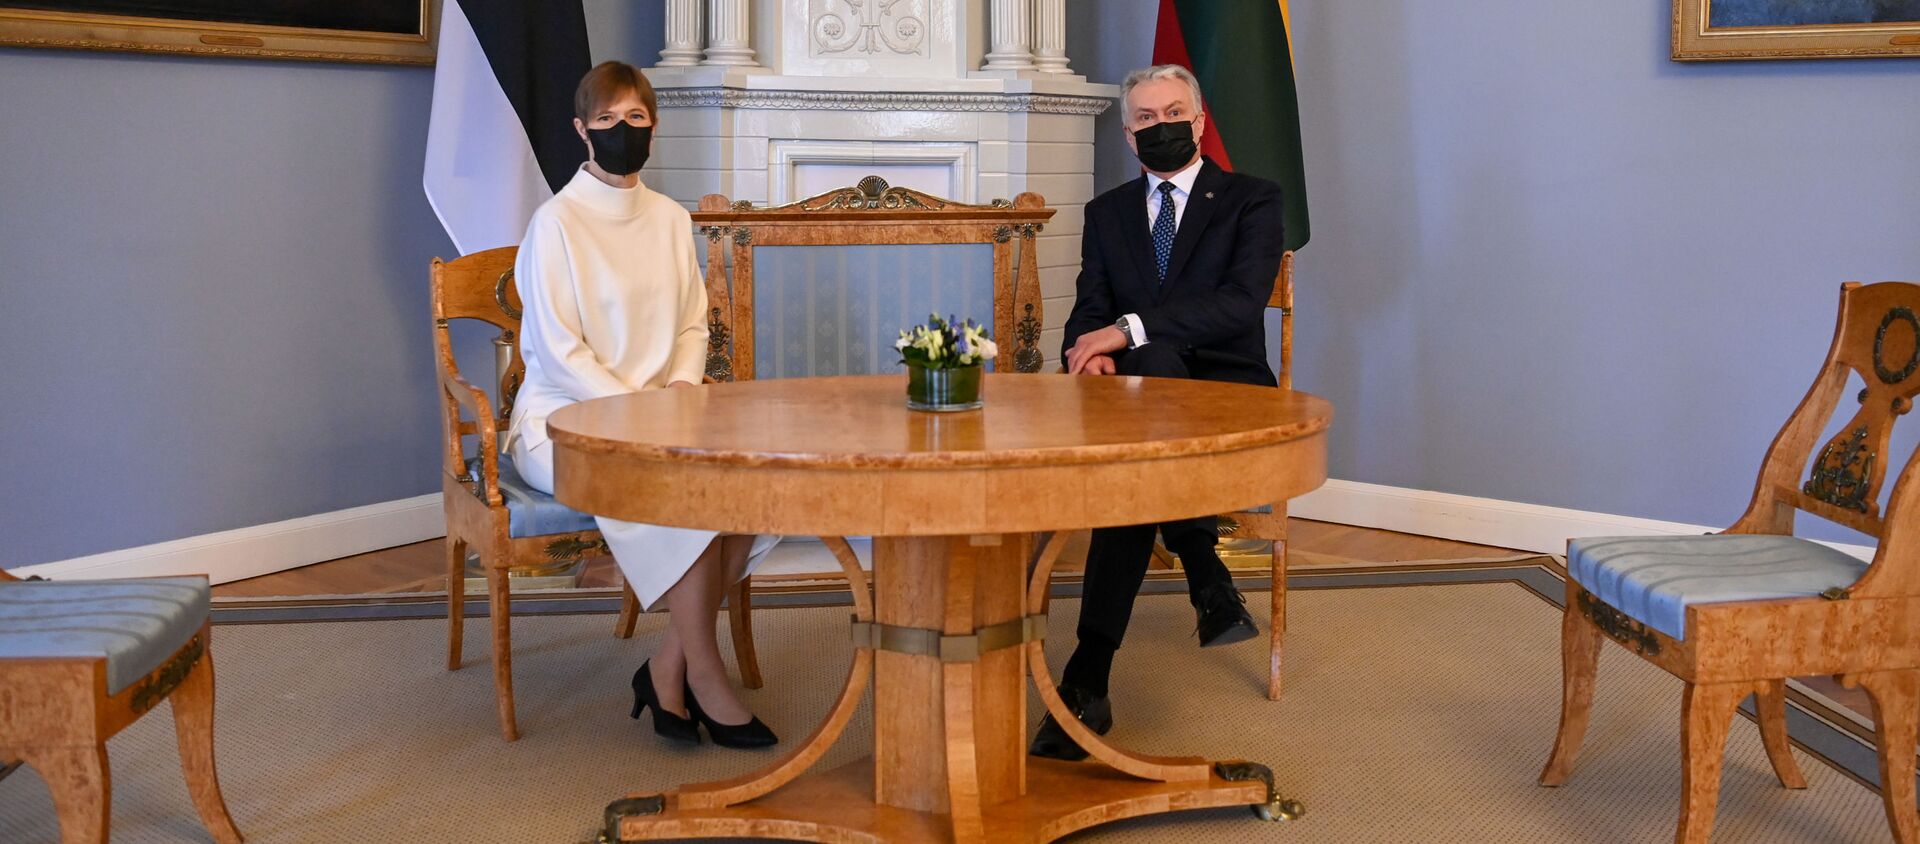 Estijos vadovė Kersti Kaljulaid ir Lietuvos prezidentas Gitanas Nausėda - Sputnik Lietuva, 1920, 03.03.2021